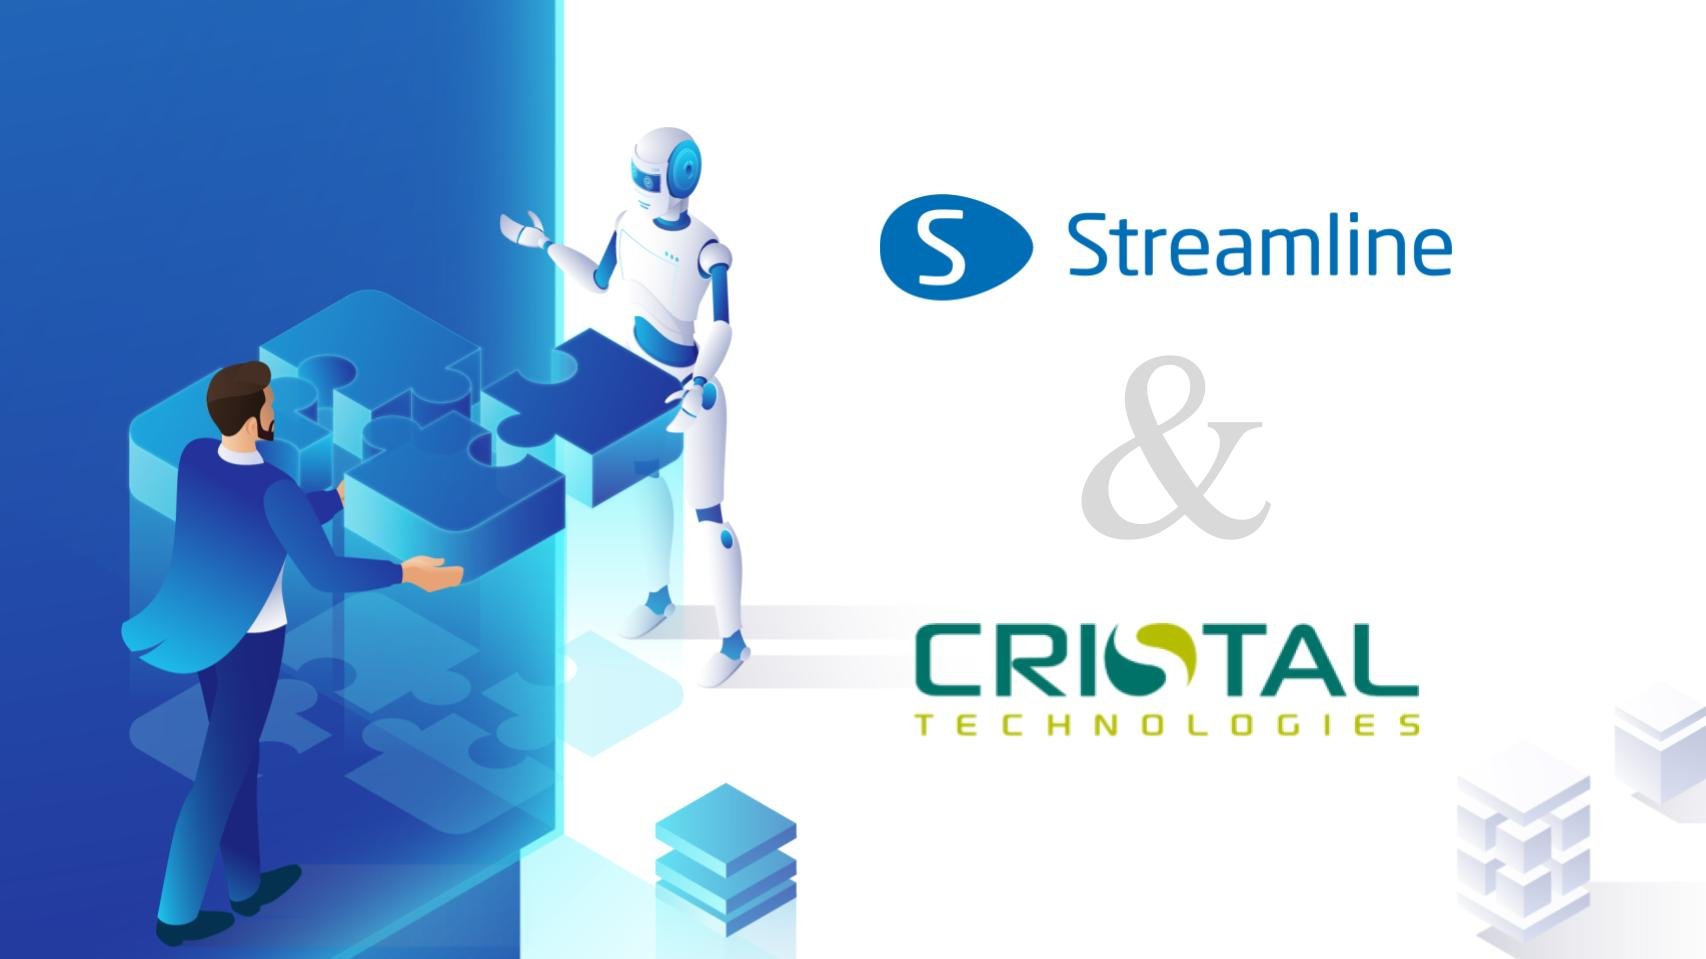 GMDH Streamline et Cristal Technologies annoncent un partenariat stratégique